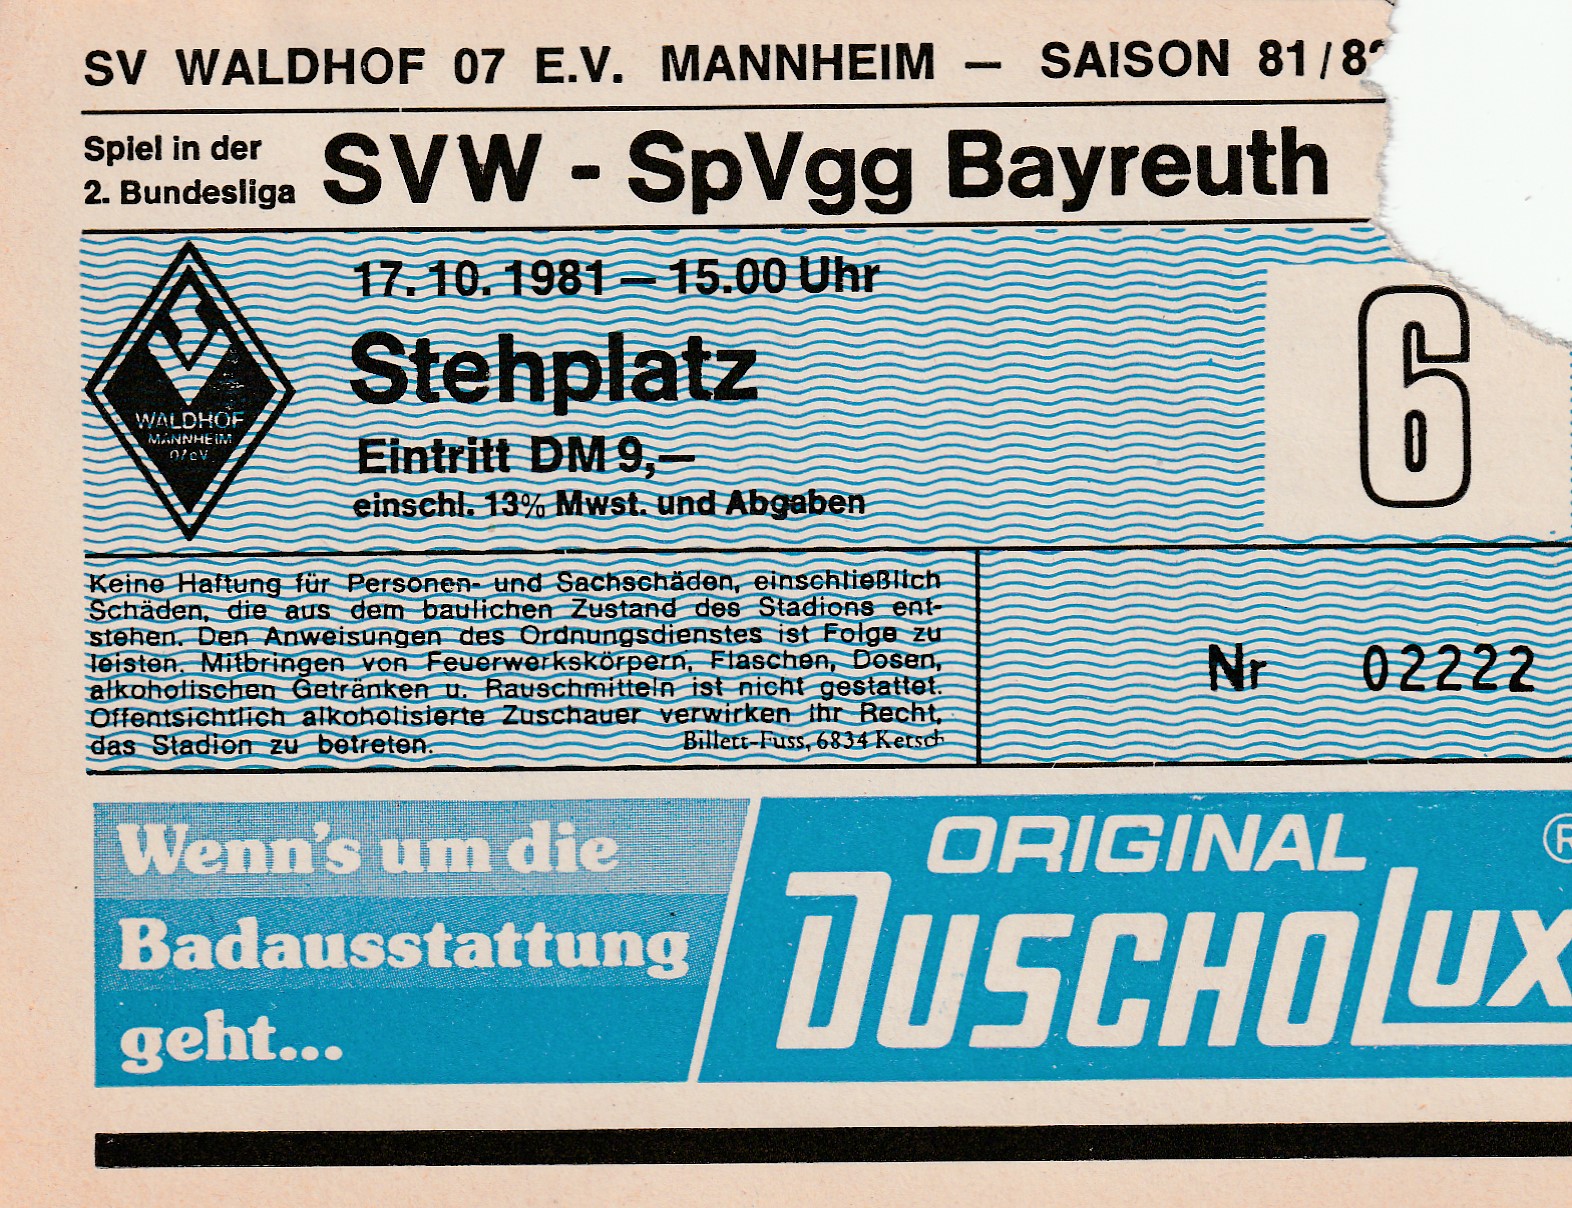 SV Waldhof - Bayreuth31171081.jpeg